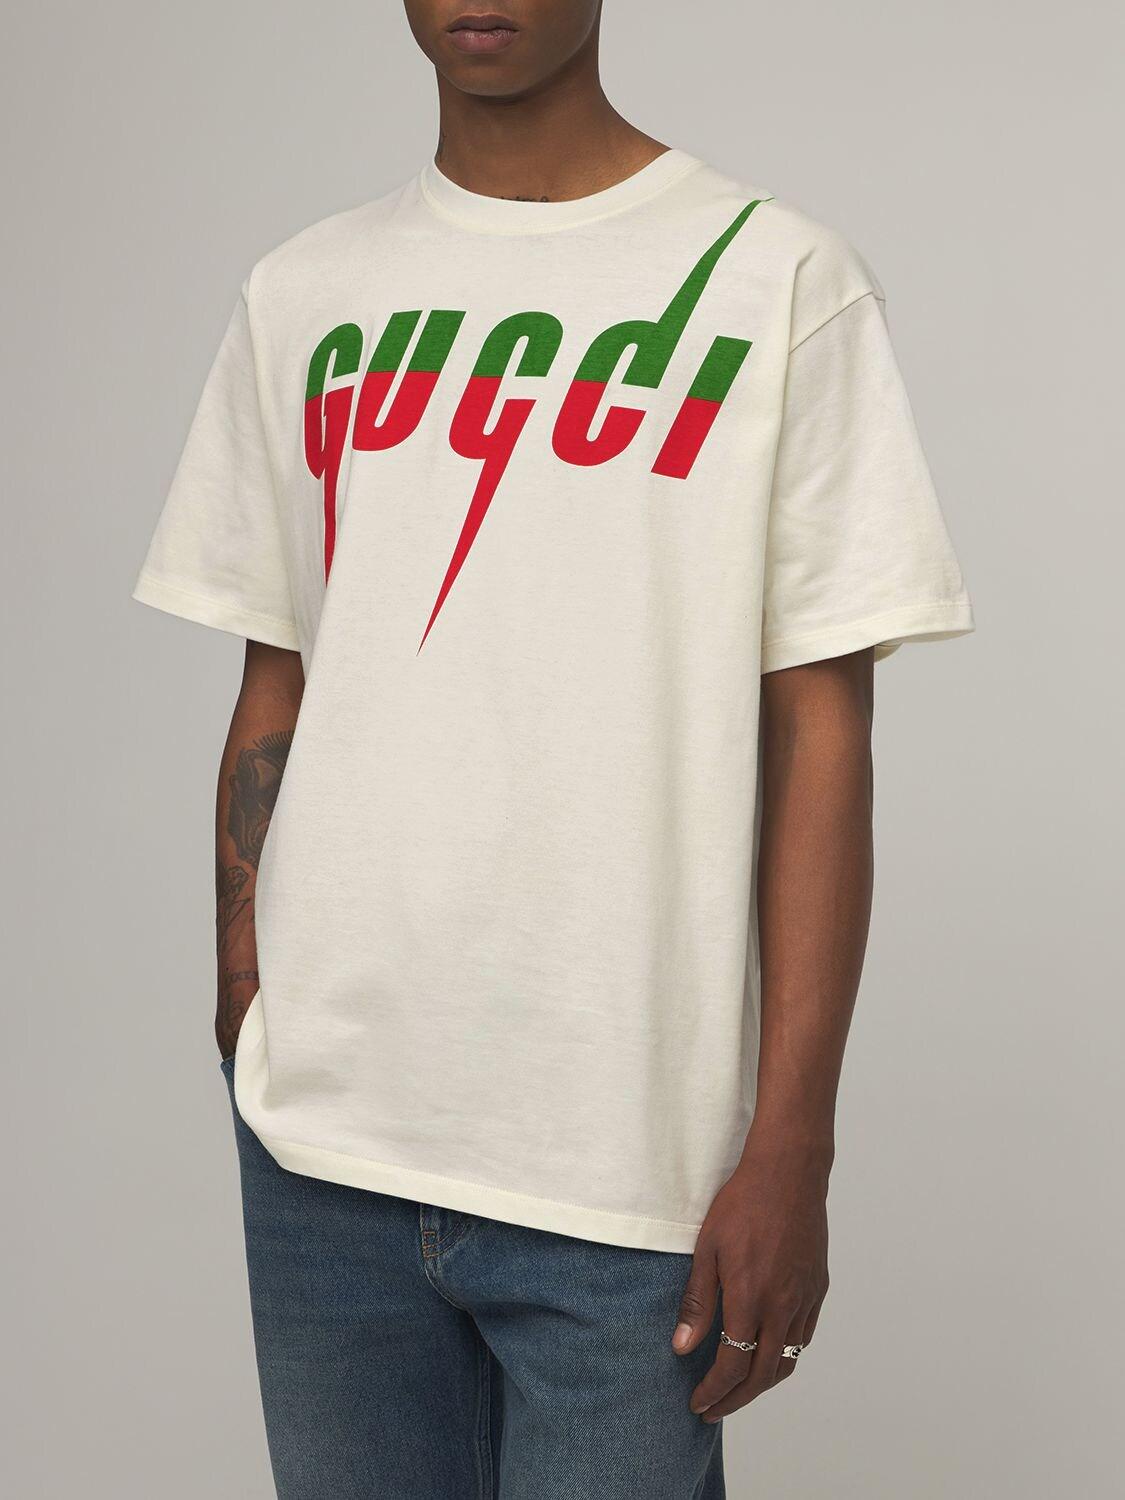 【オープニング大セール】 【GUCCI】【メンズ】【Tシャツ】T-shirt with Gucci Blade print Tシャツ